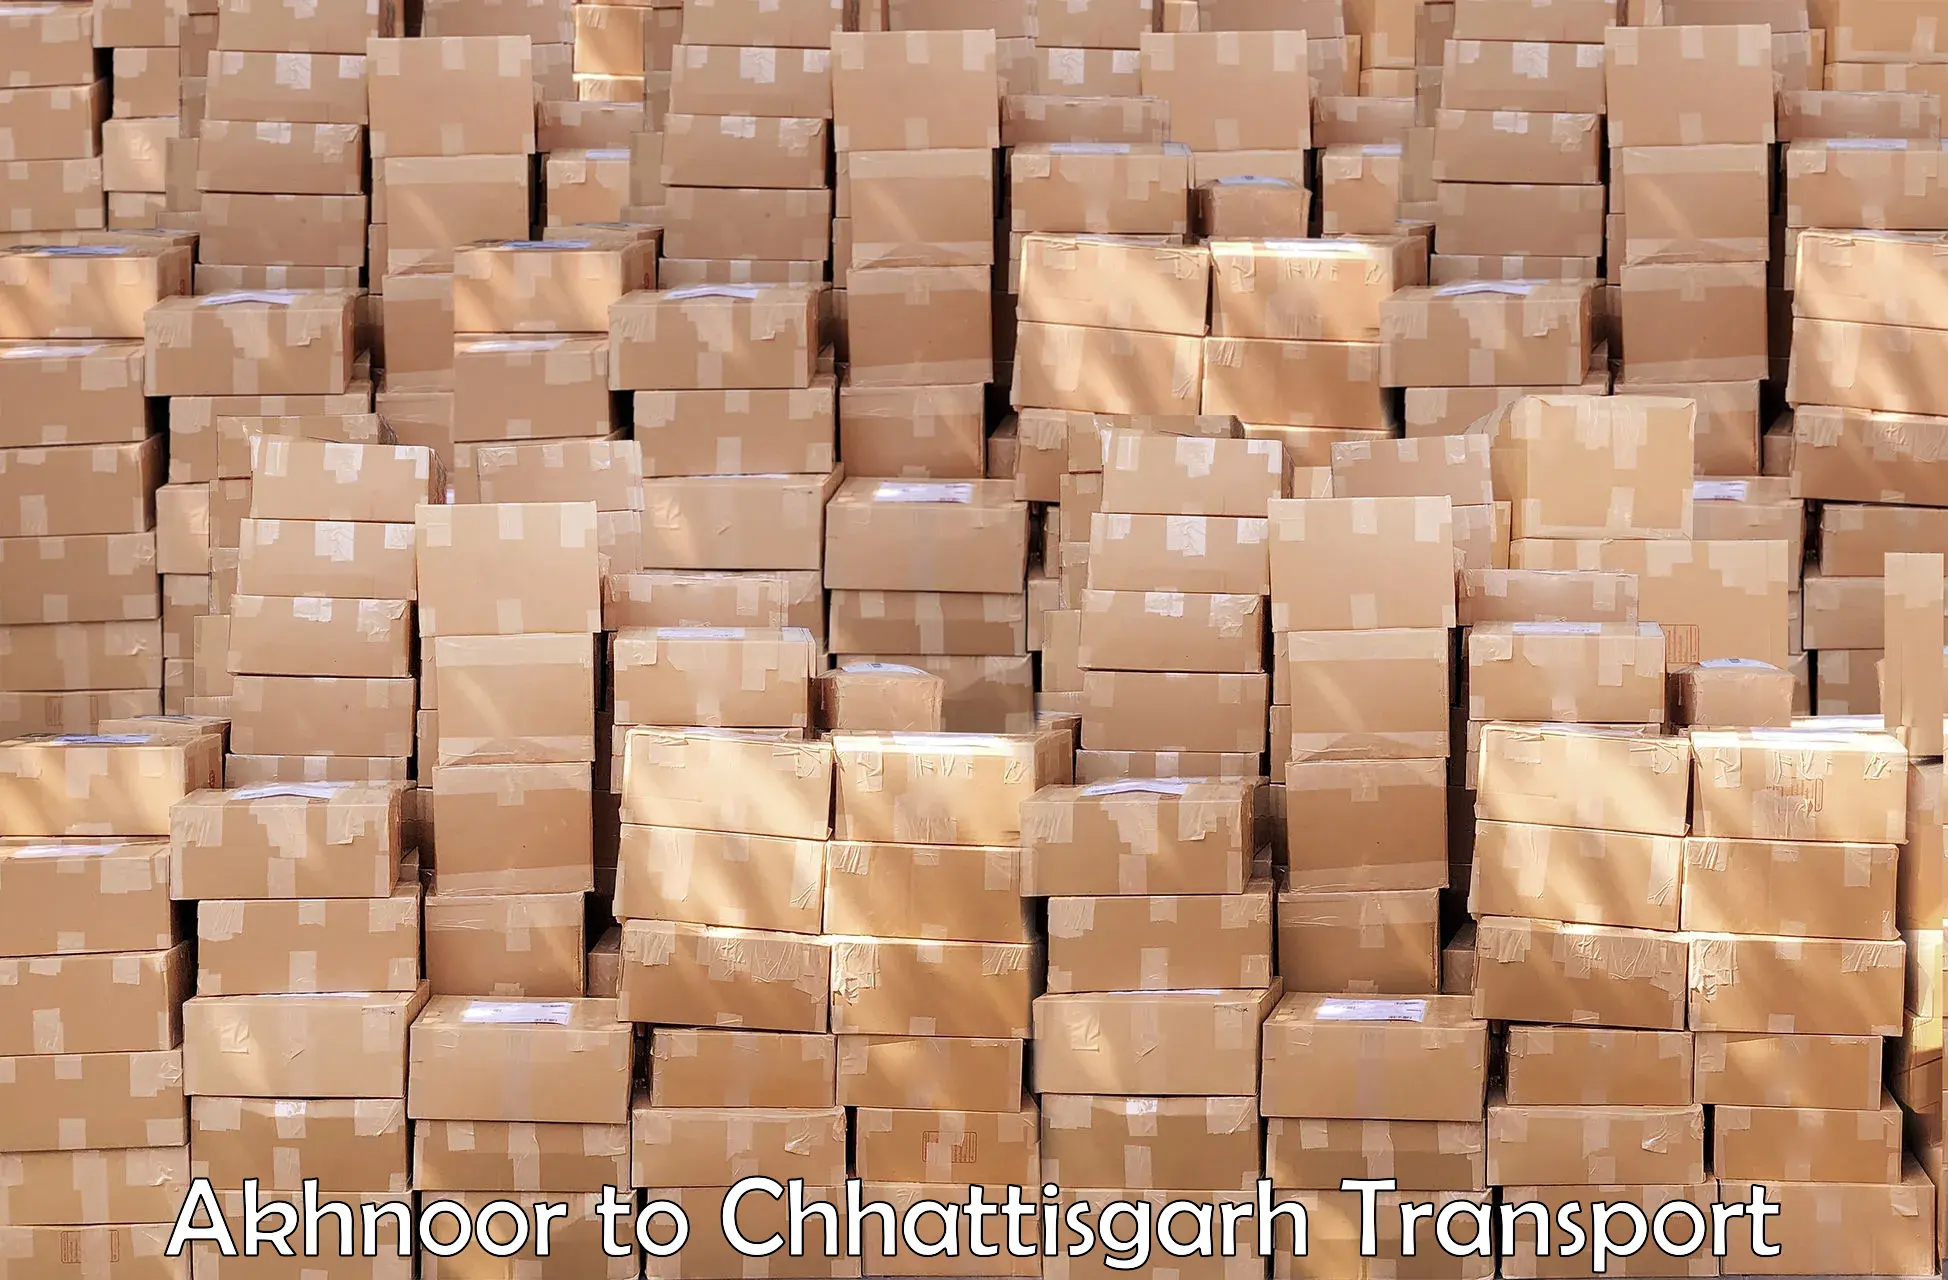 Goods transport services Akhnoor to Patna Chhattisgarh